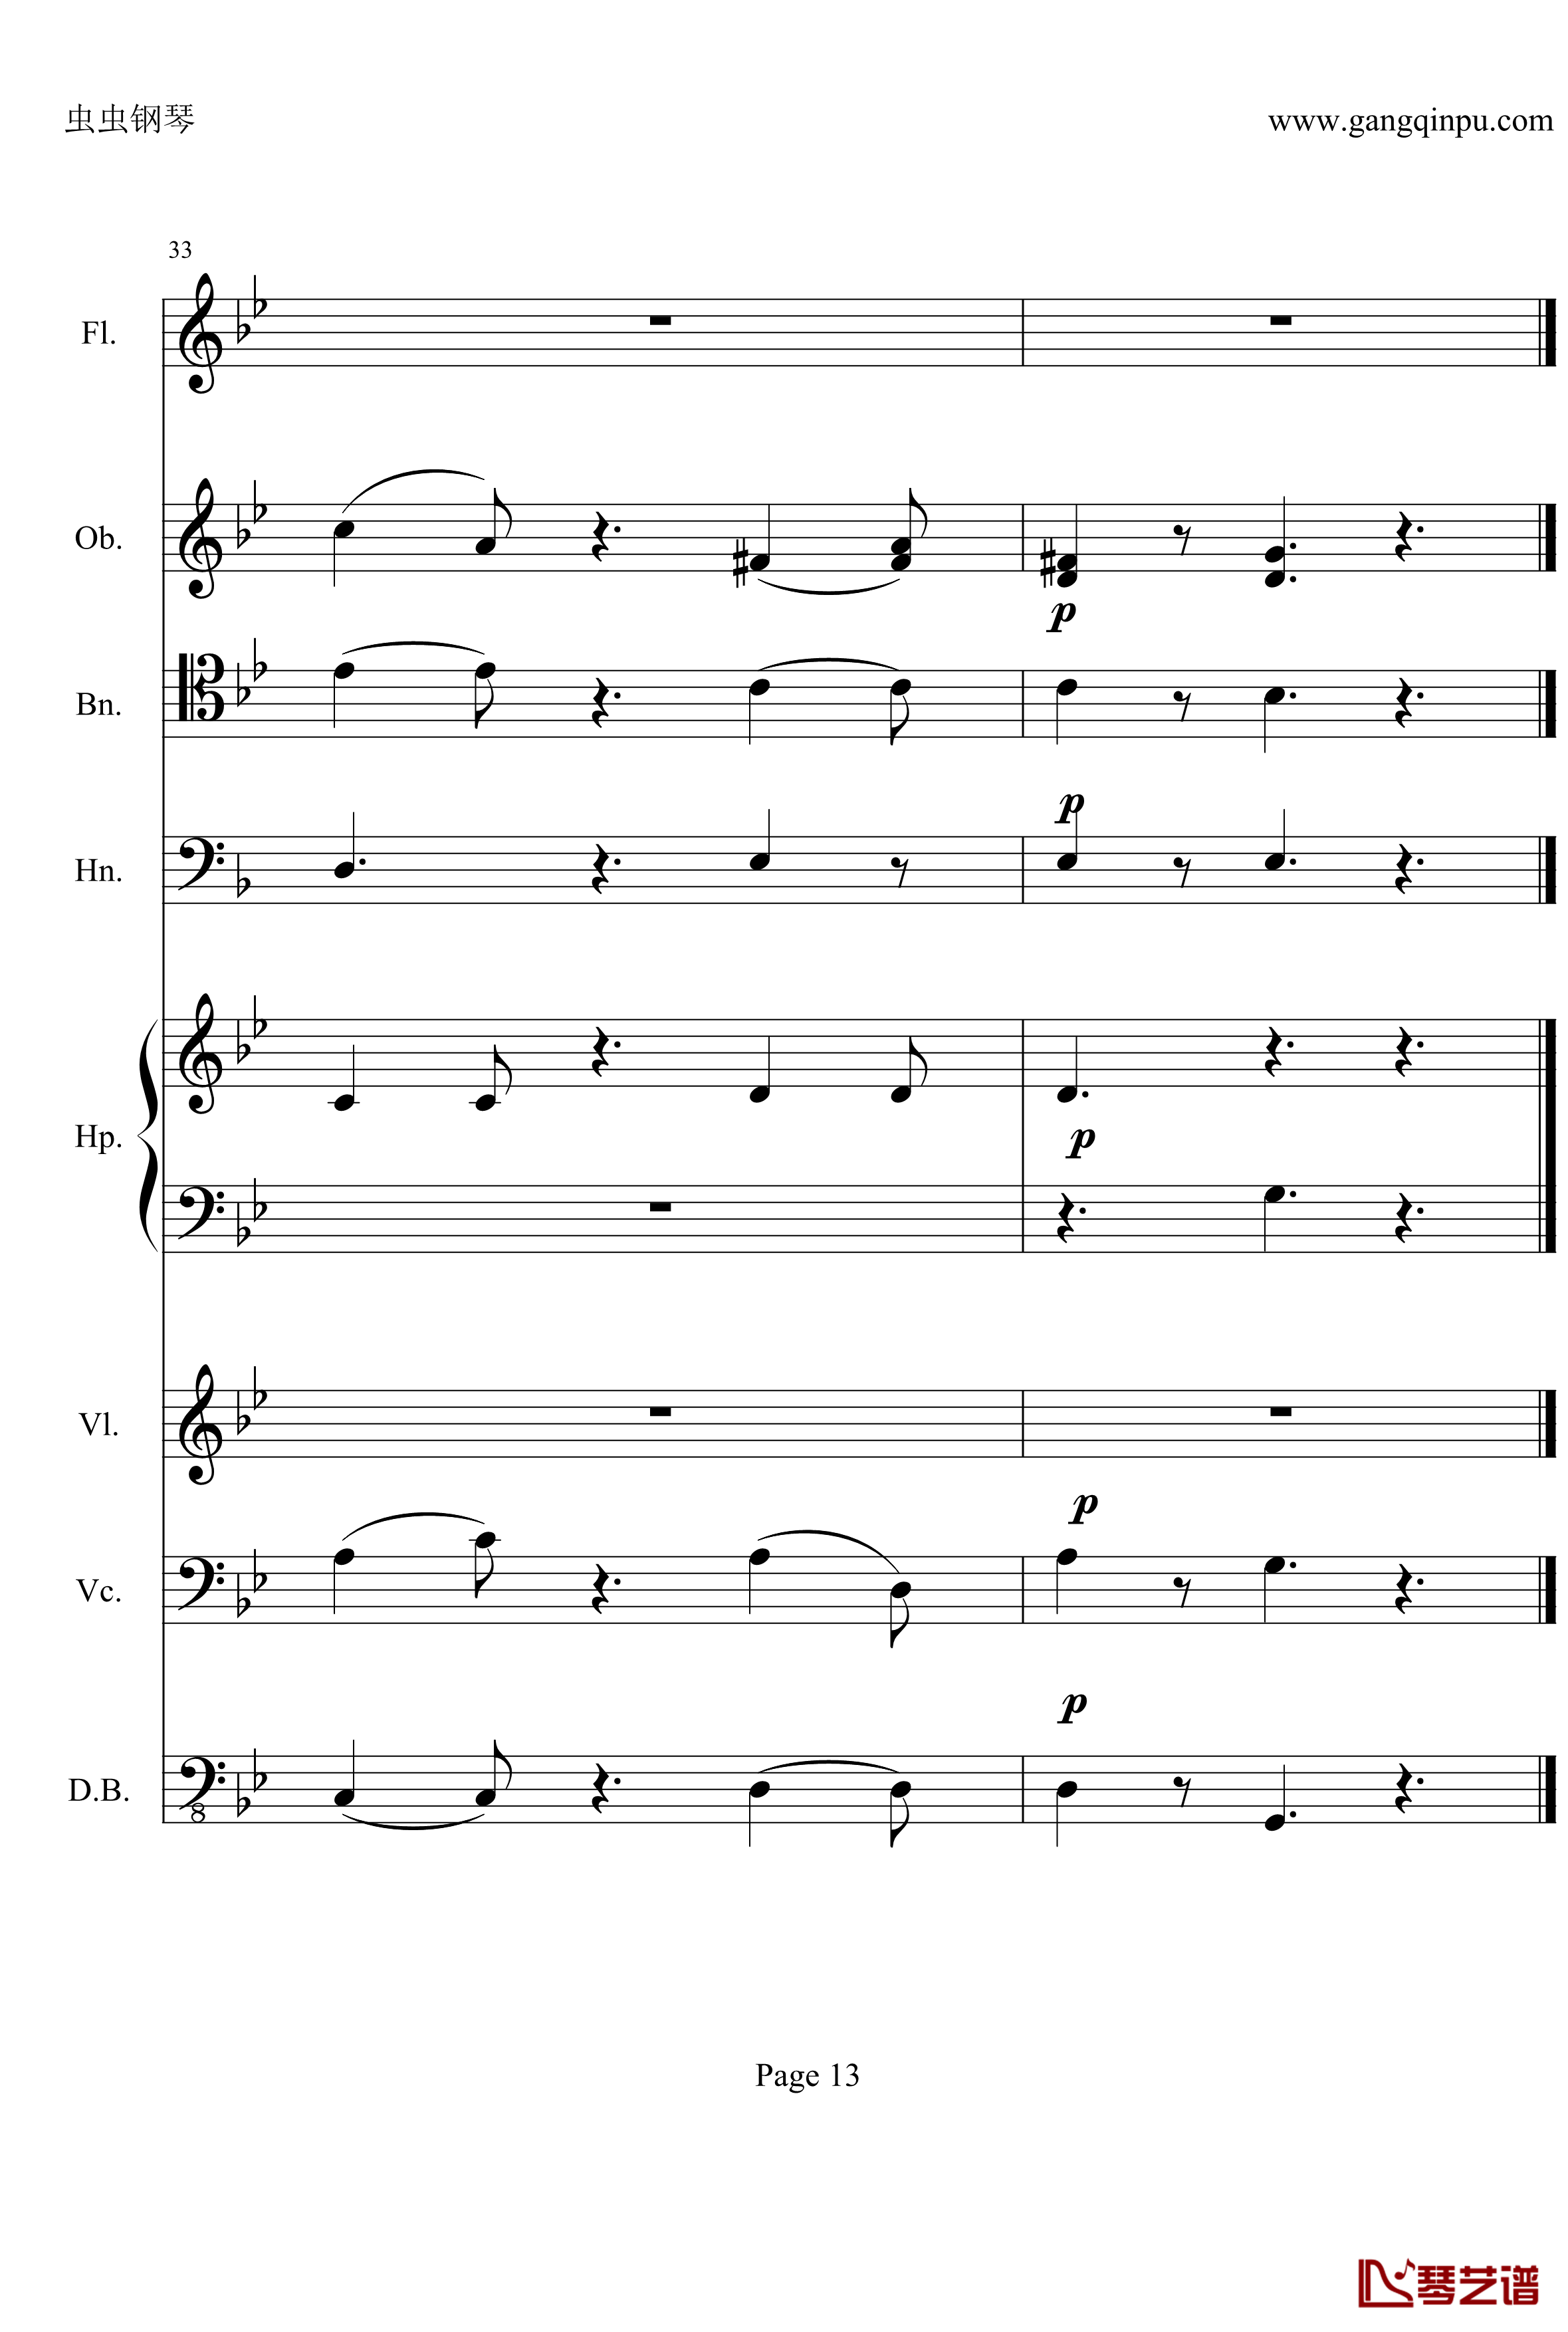 奏鸣曲之交响钢琴谱-第25首-Ⅱ-贝多芬-beethoven13